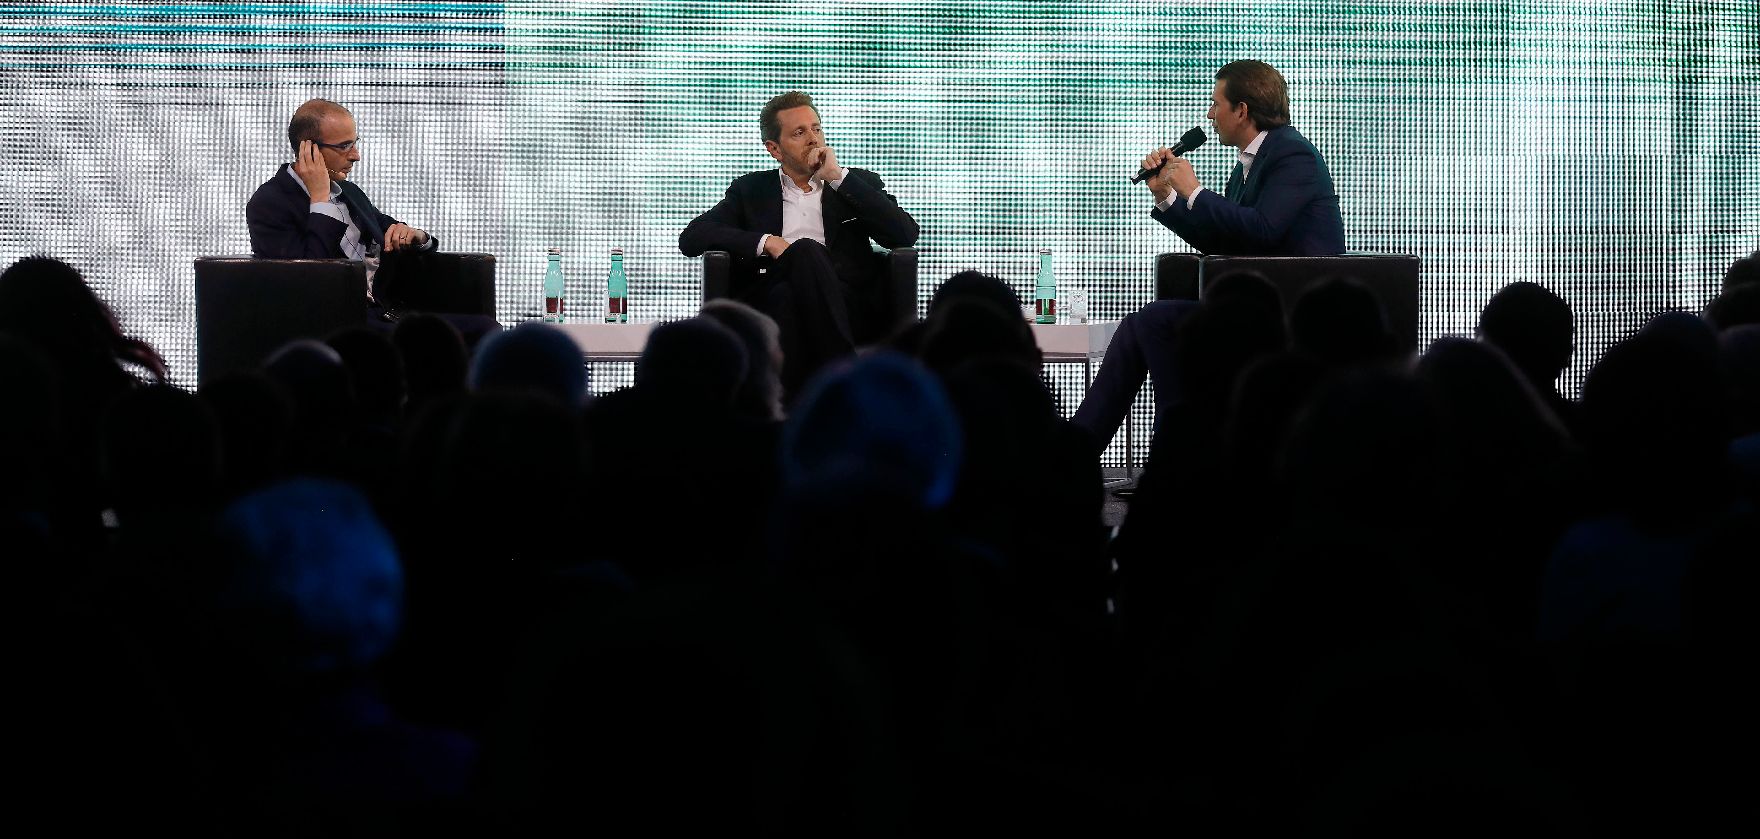 Am 7. Mai 2019 nahm Bundeskanzler Sebastian Kurz (r.) an der Veranstaltung "The European Dream" teil. Im Bild mit dem Wirtschaftskammerpräsident Harald Mahrer (m.) und dem israelischen Historiker Yuval Noah Harari (l.).